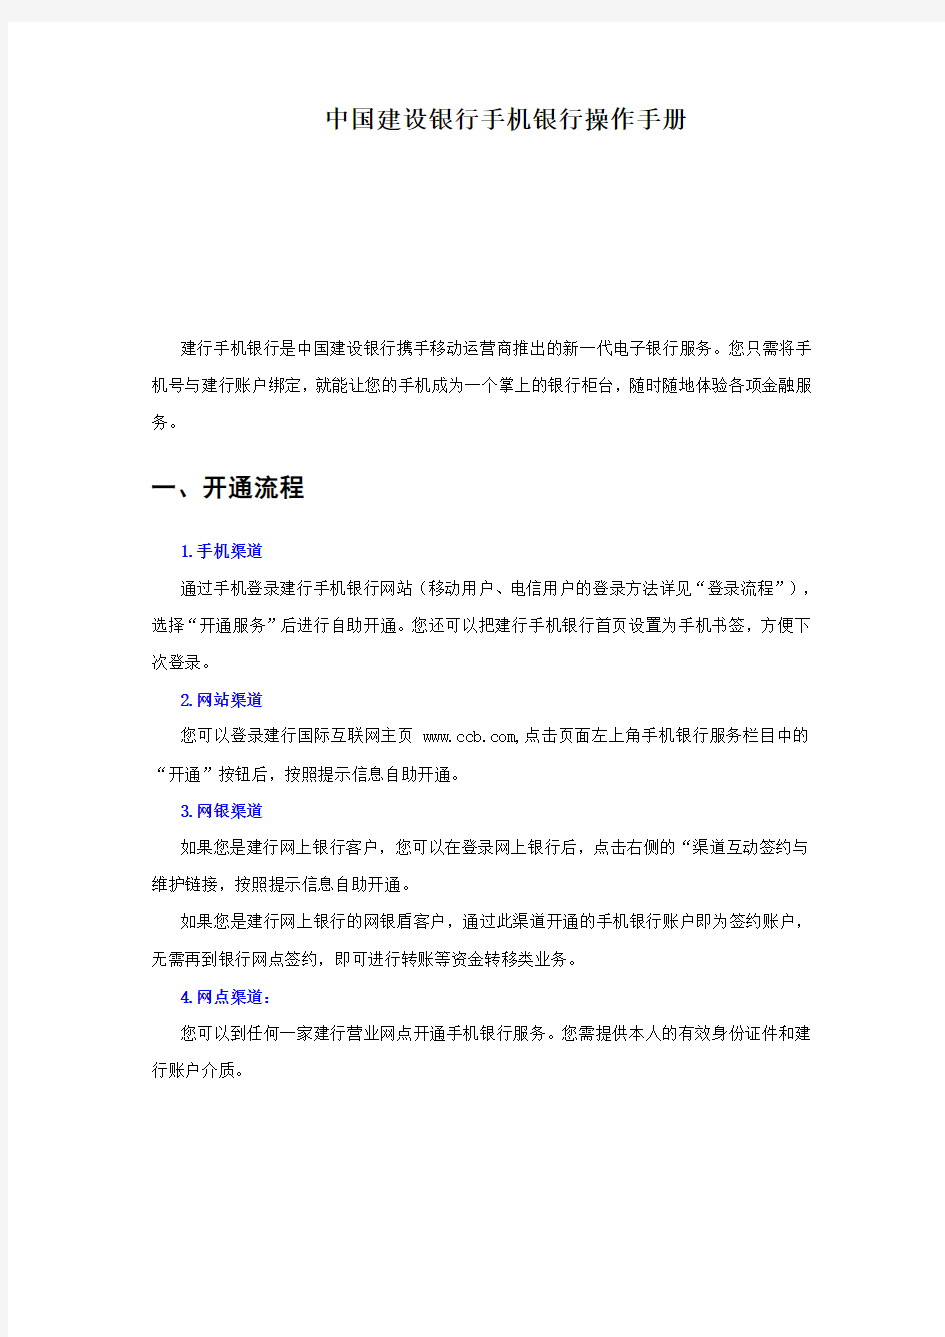 中国建设银行手机银行操作手册20100128